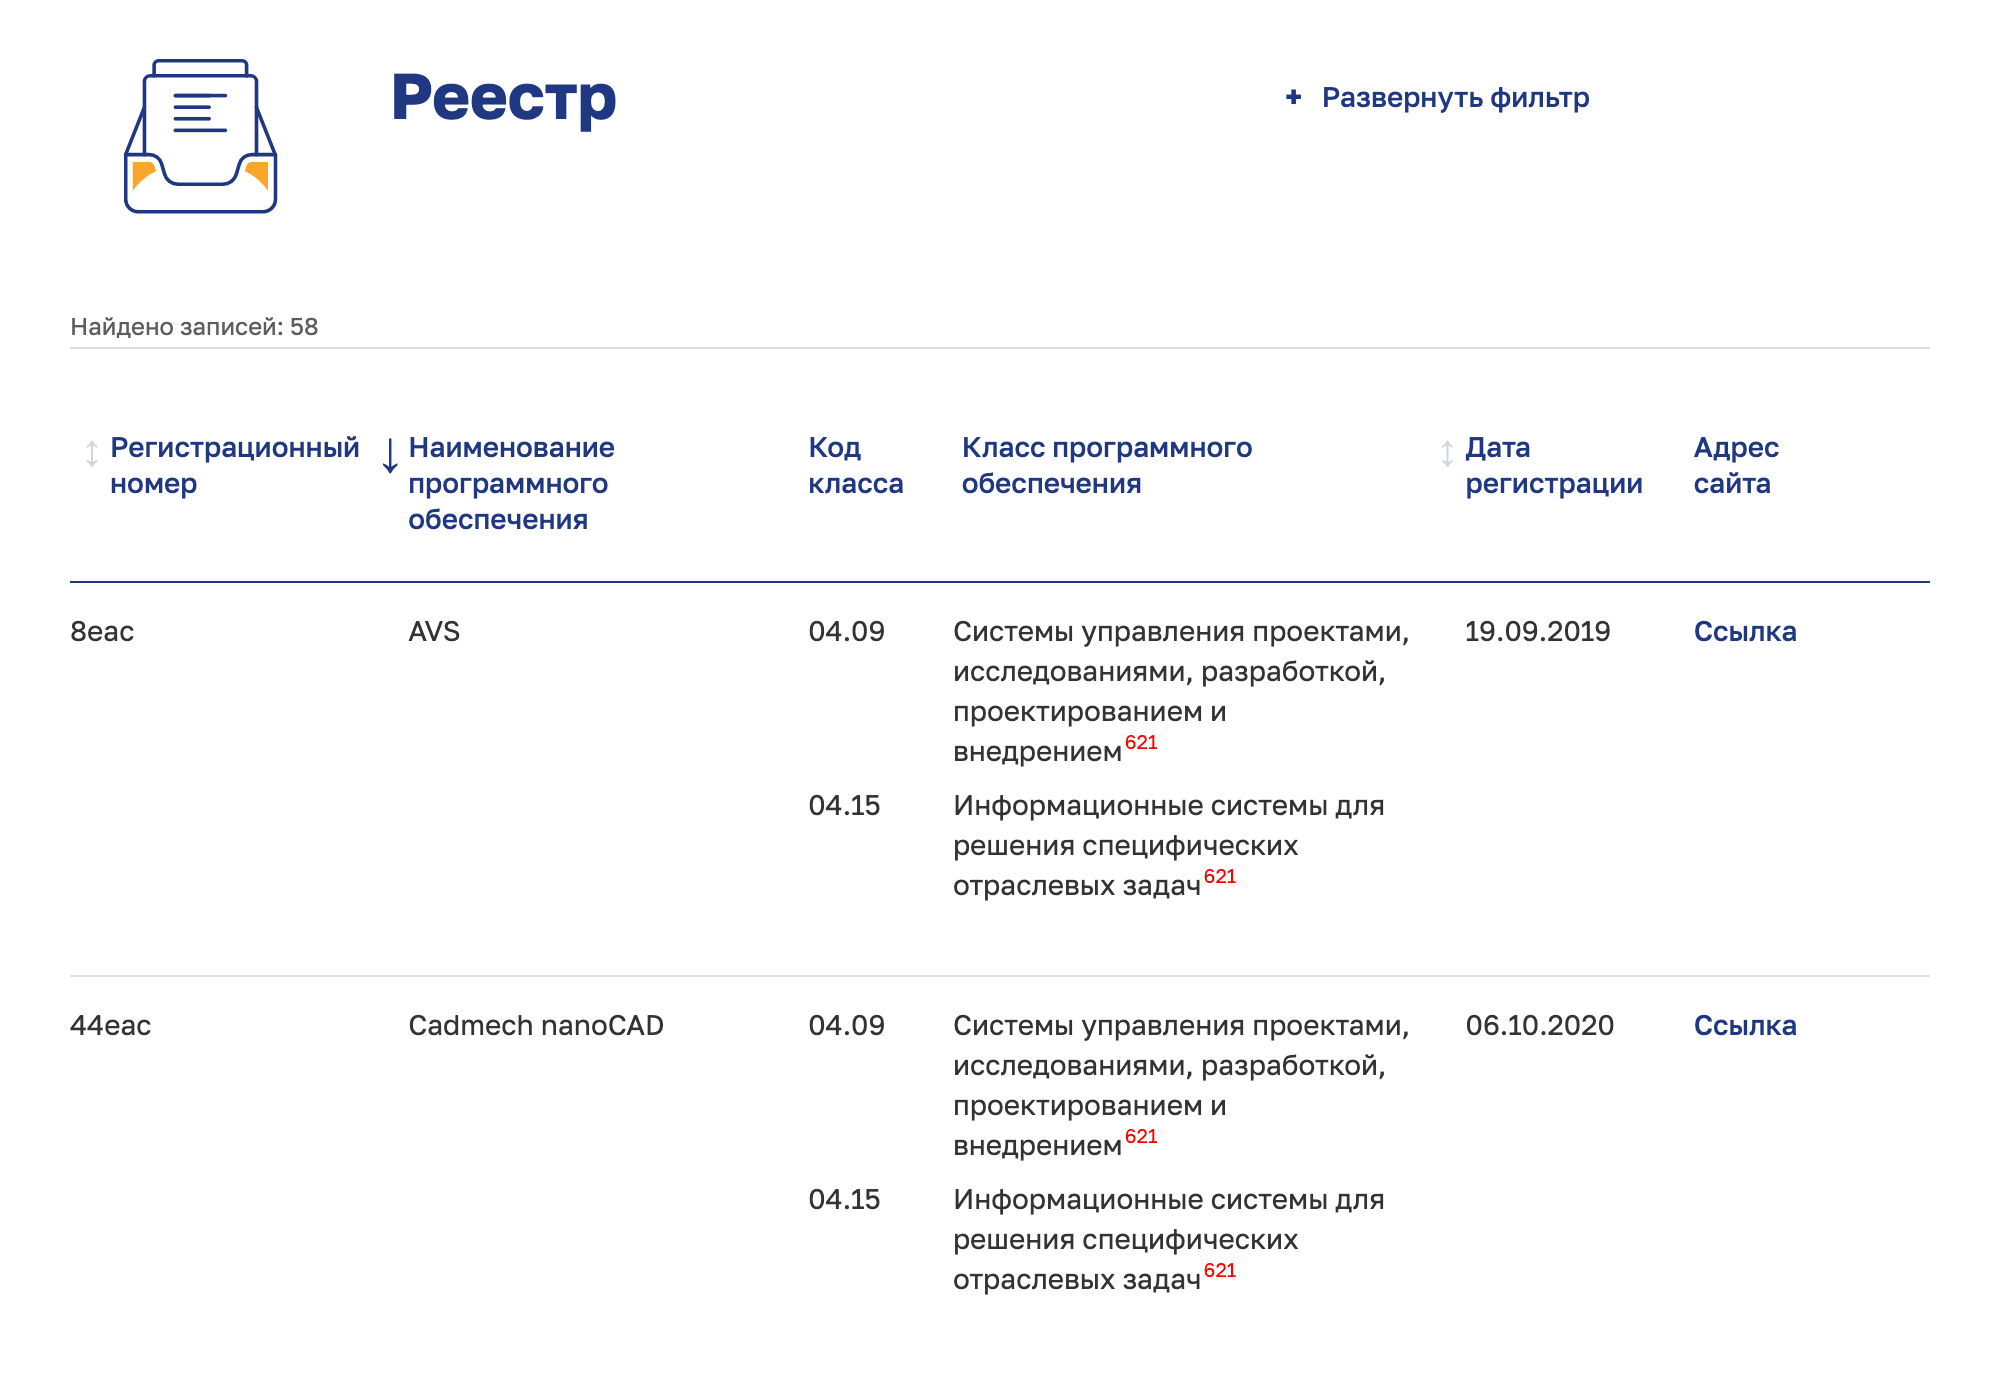 В евразийском реестре регистрационные номера состоят из цифр и букв «eac»